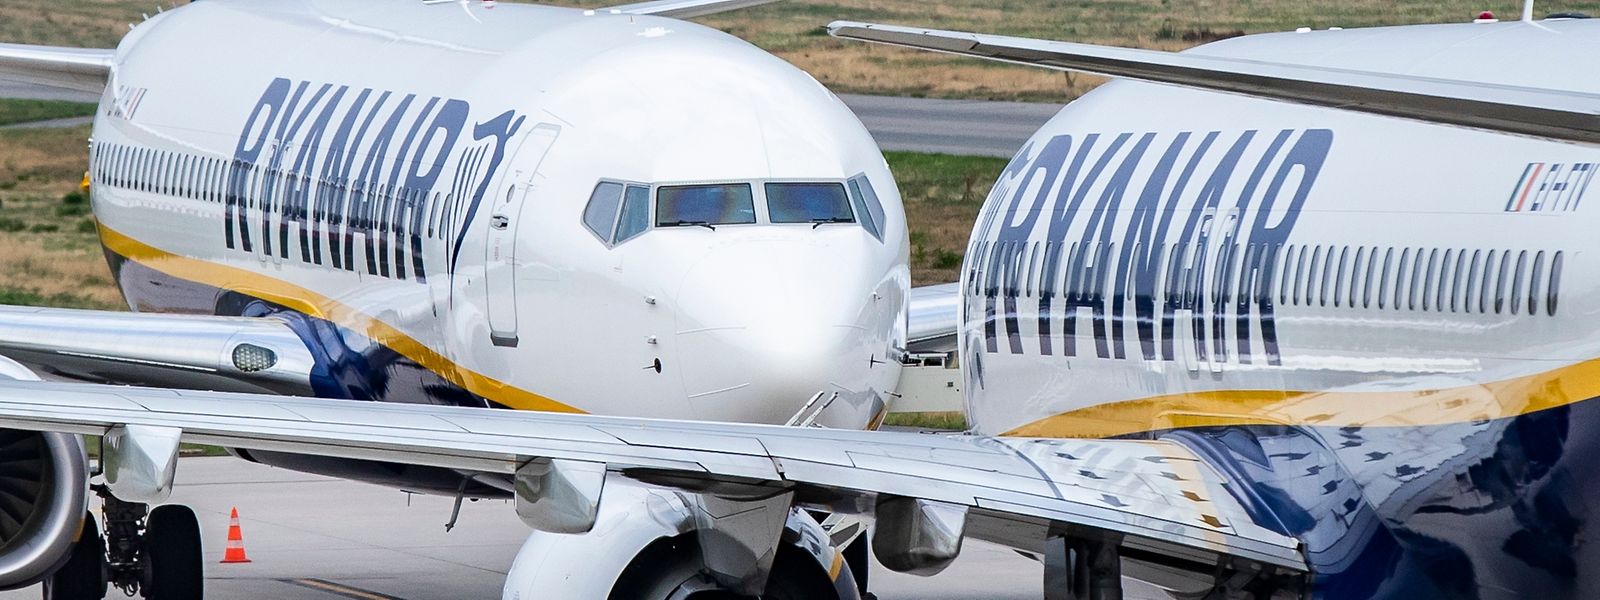 Flugzeuge der irischen Airline Ryanair stehen auf dem Vorfeld des Flughafens Weeze.